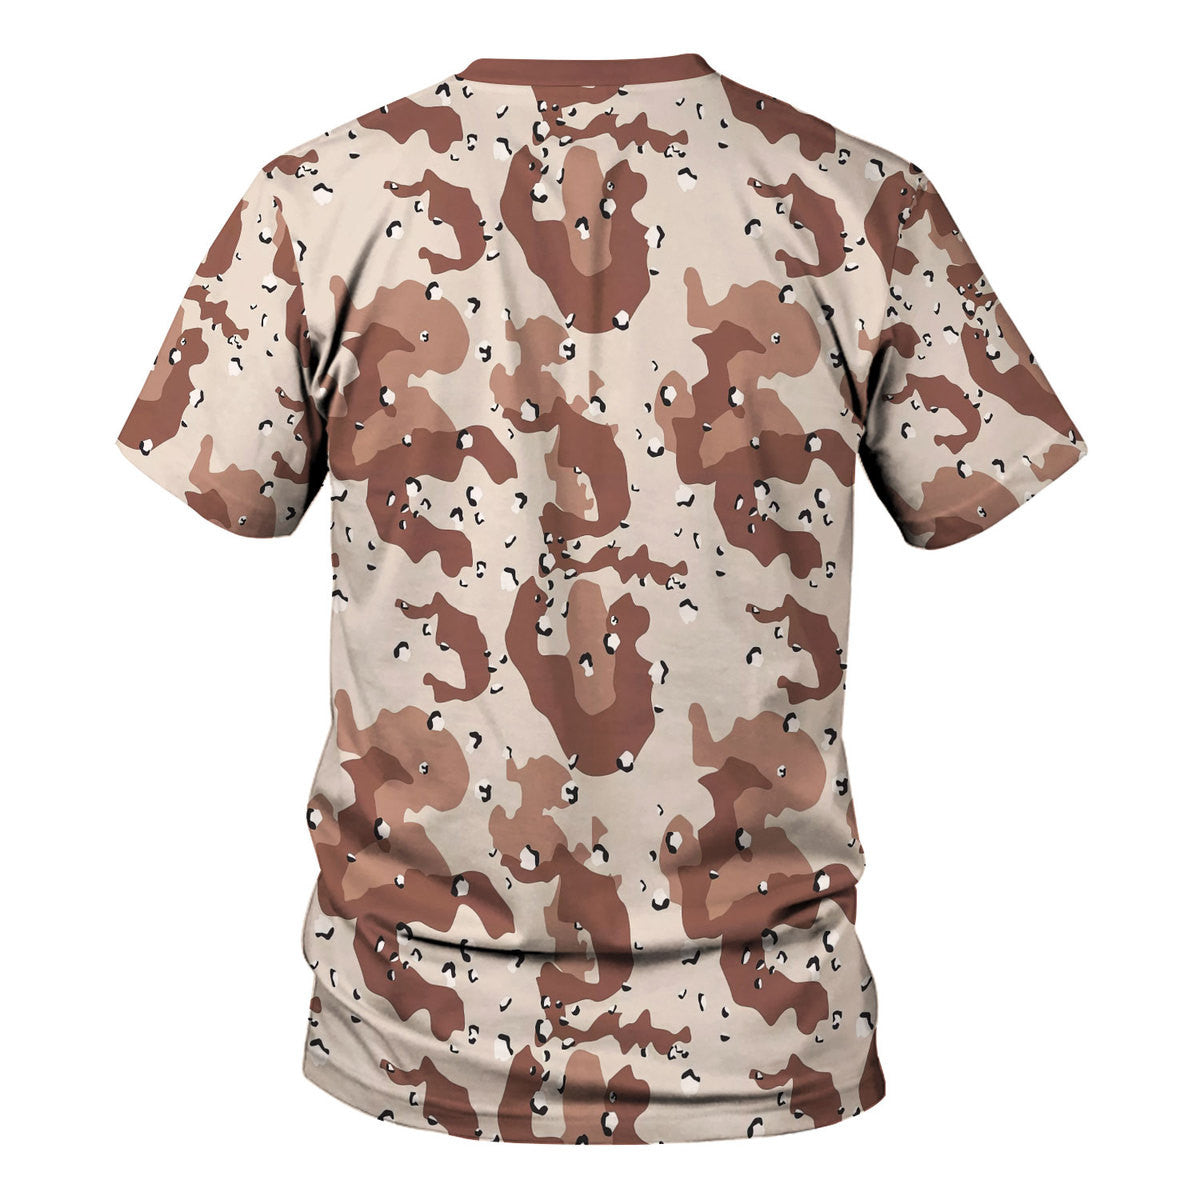 American Chocolate Chip Desert Battle Dress Uniform Camo T-shirt